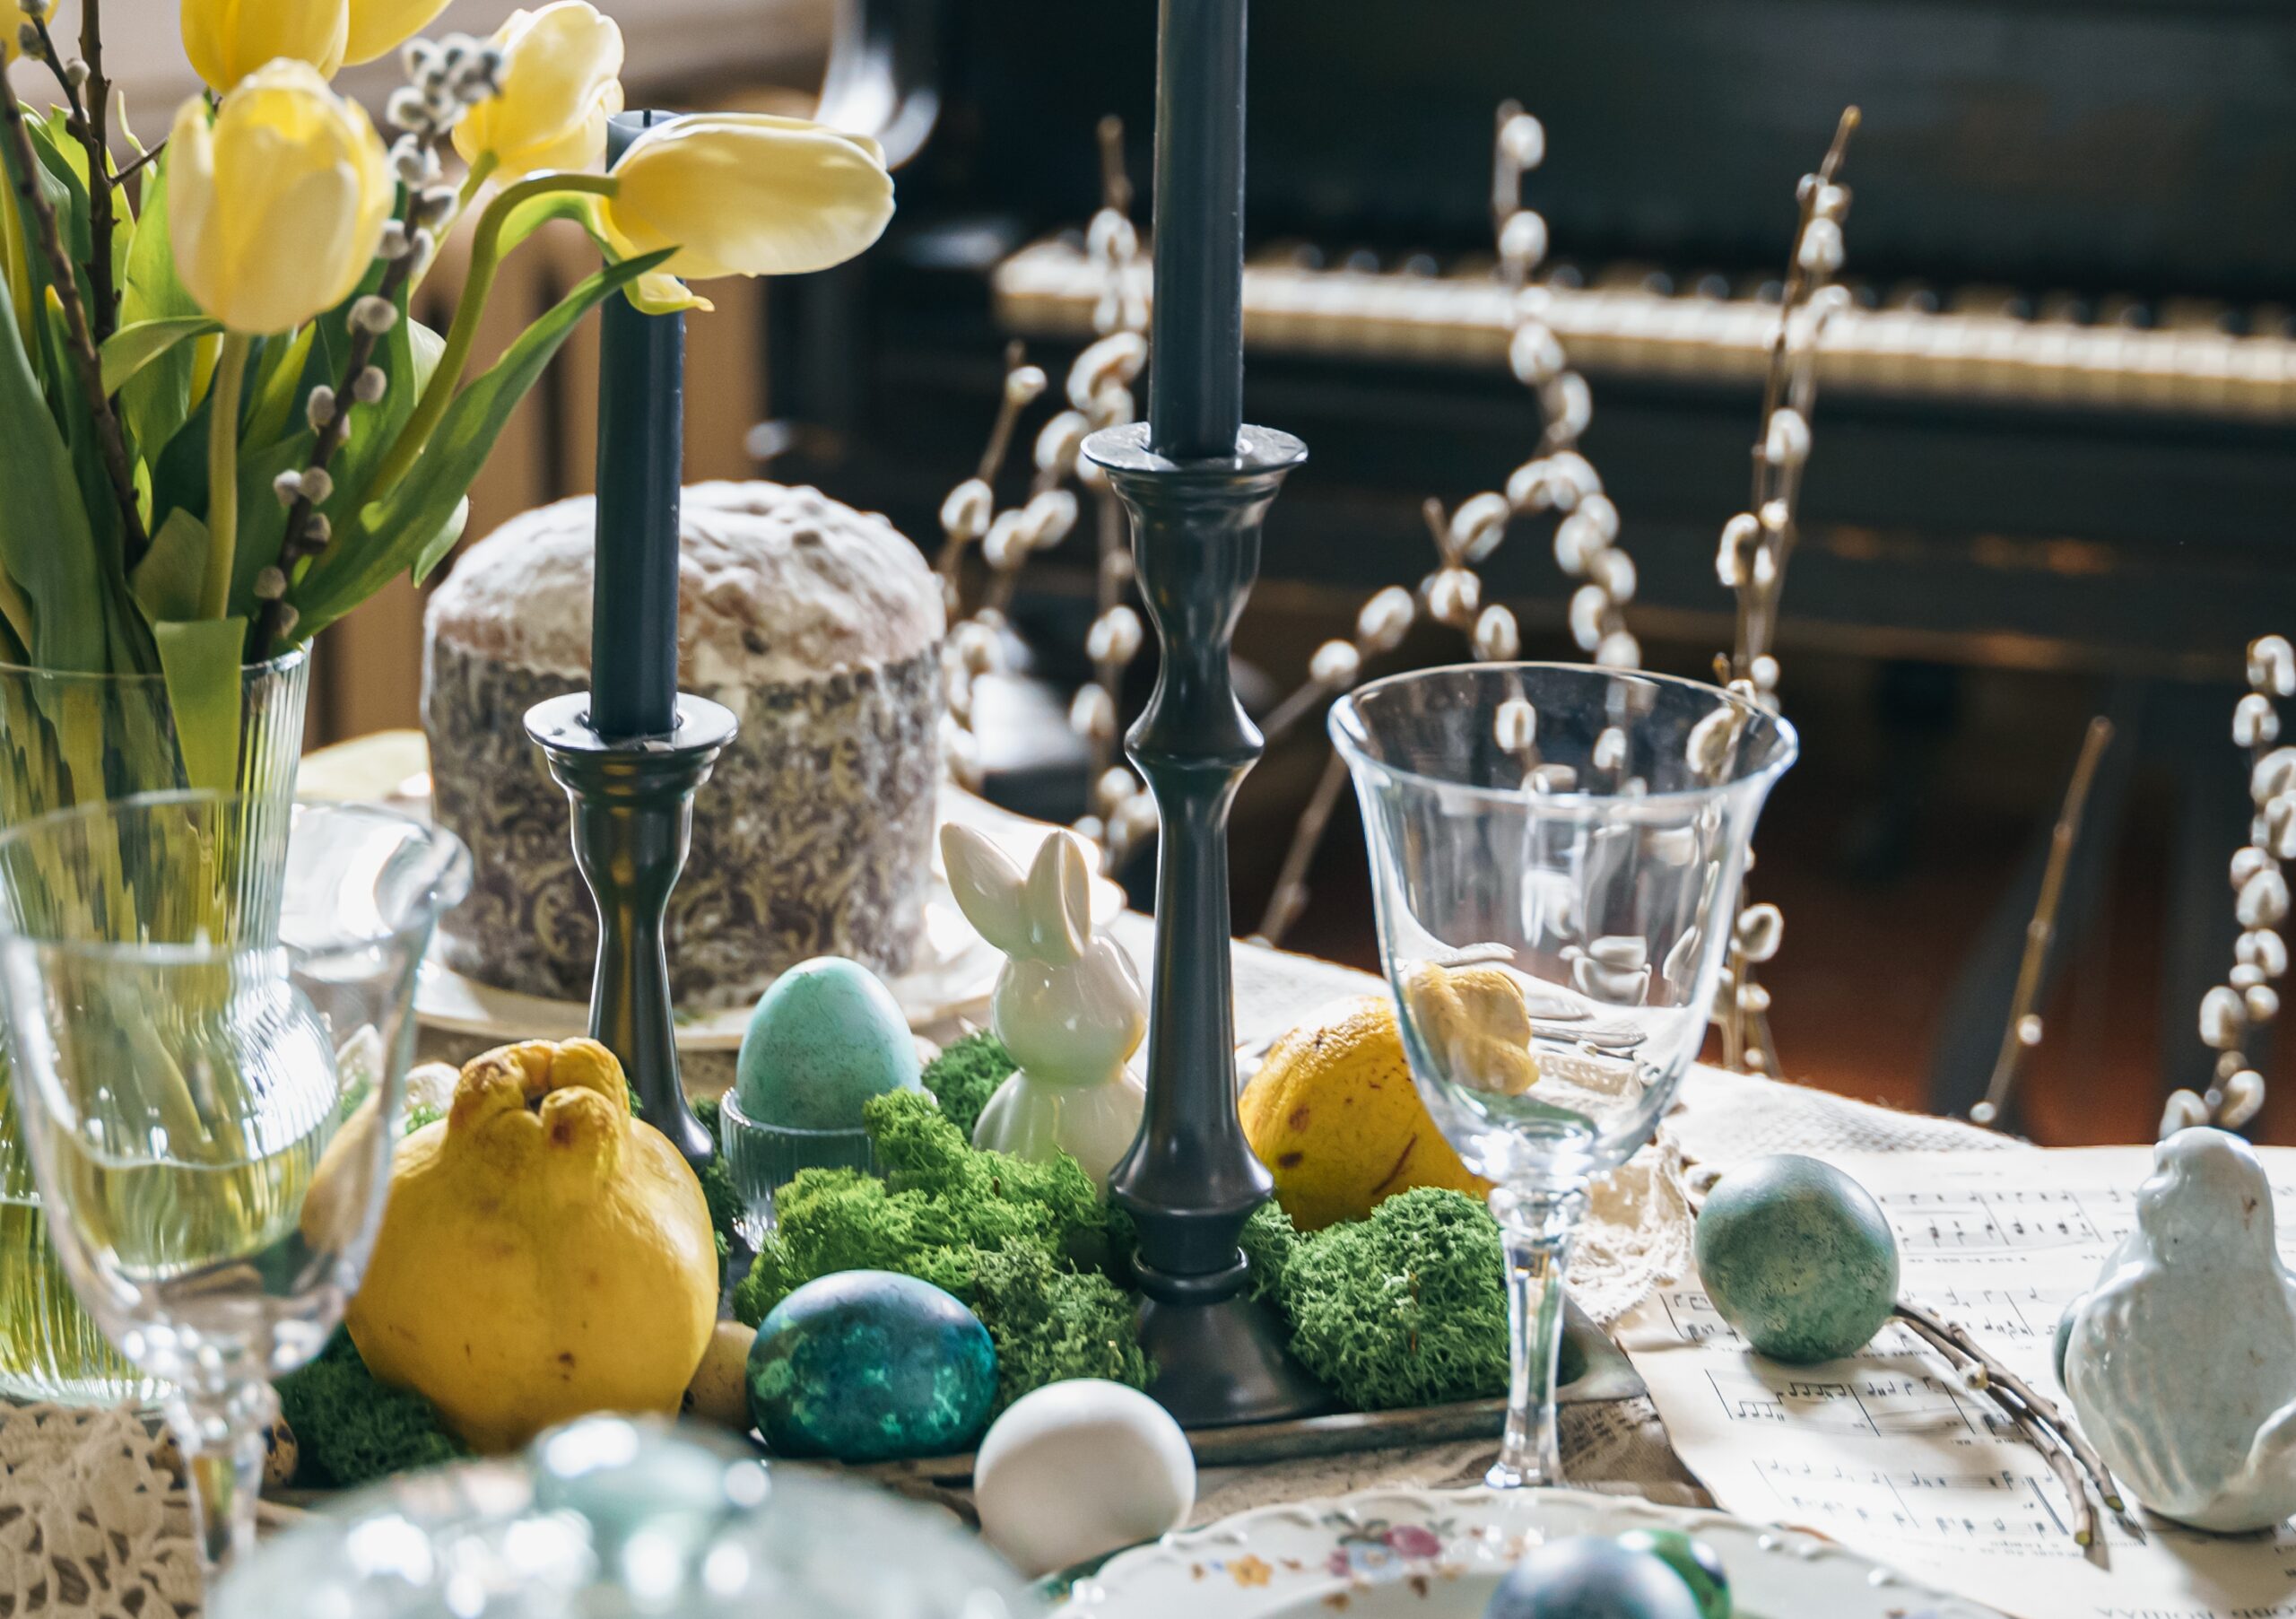 Tanie dekoracje wnętrza na Święta Wielkanocne. Sprawdź pomysły od Vilandy!